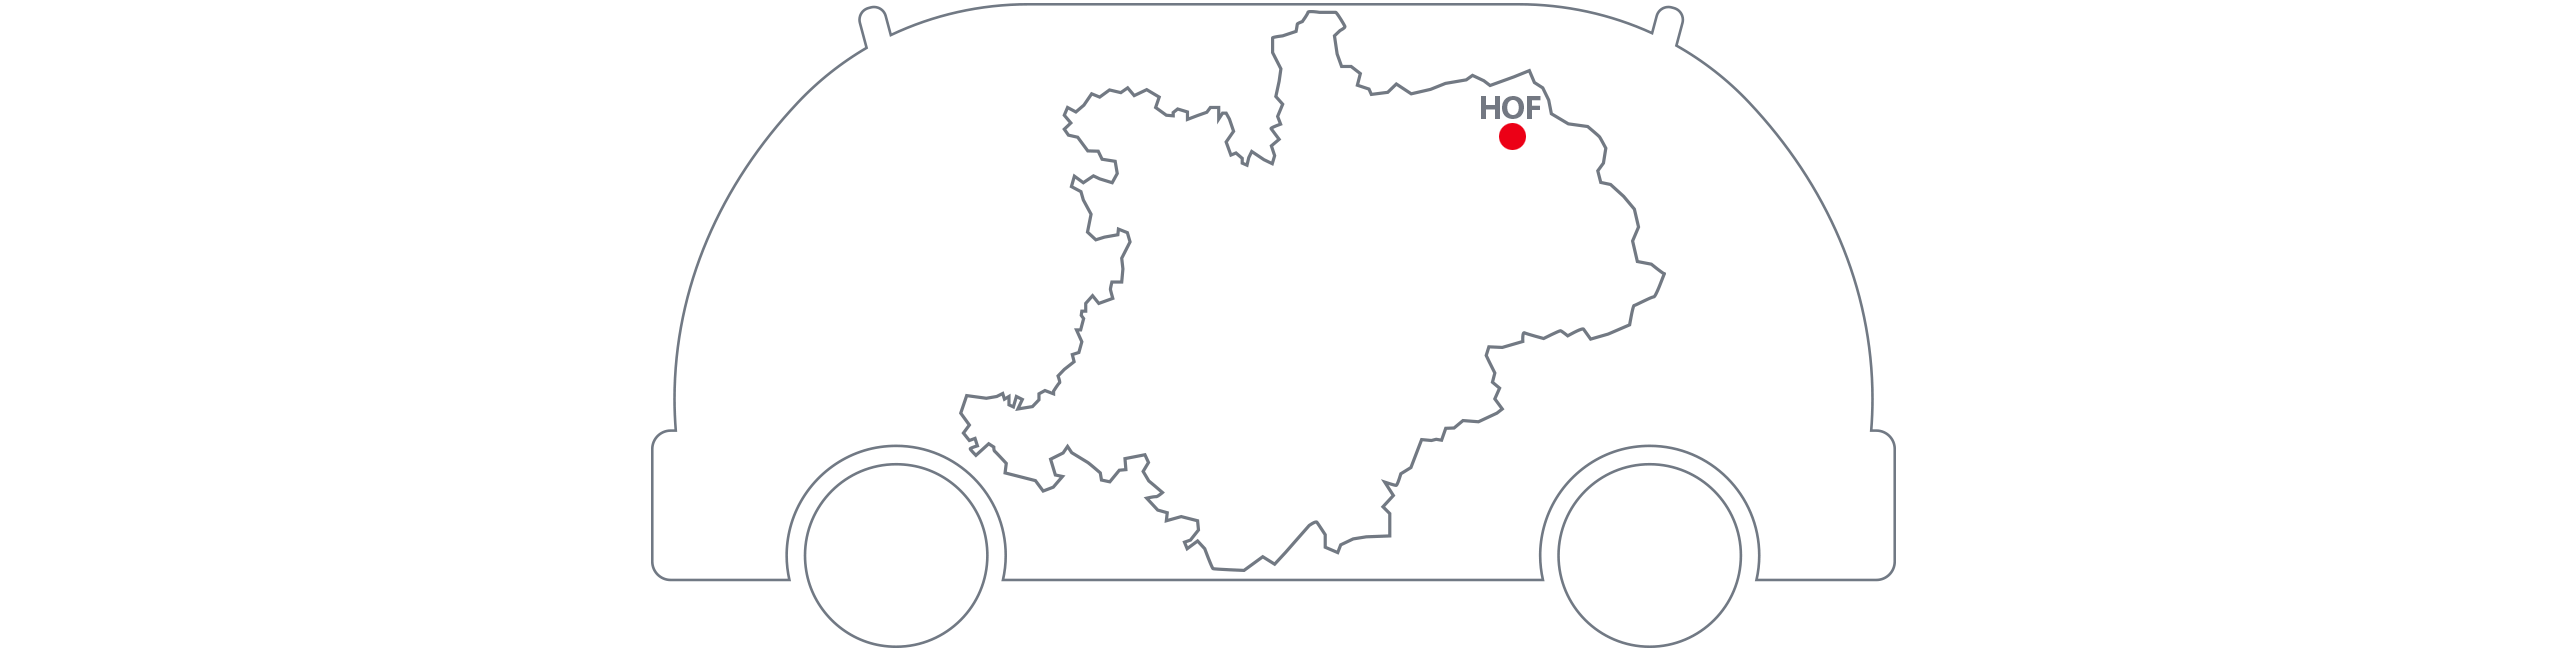 Shuttle-Modellregion Oberfranken Karte Hof